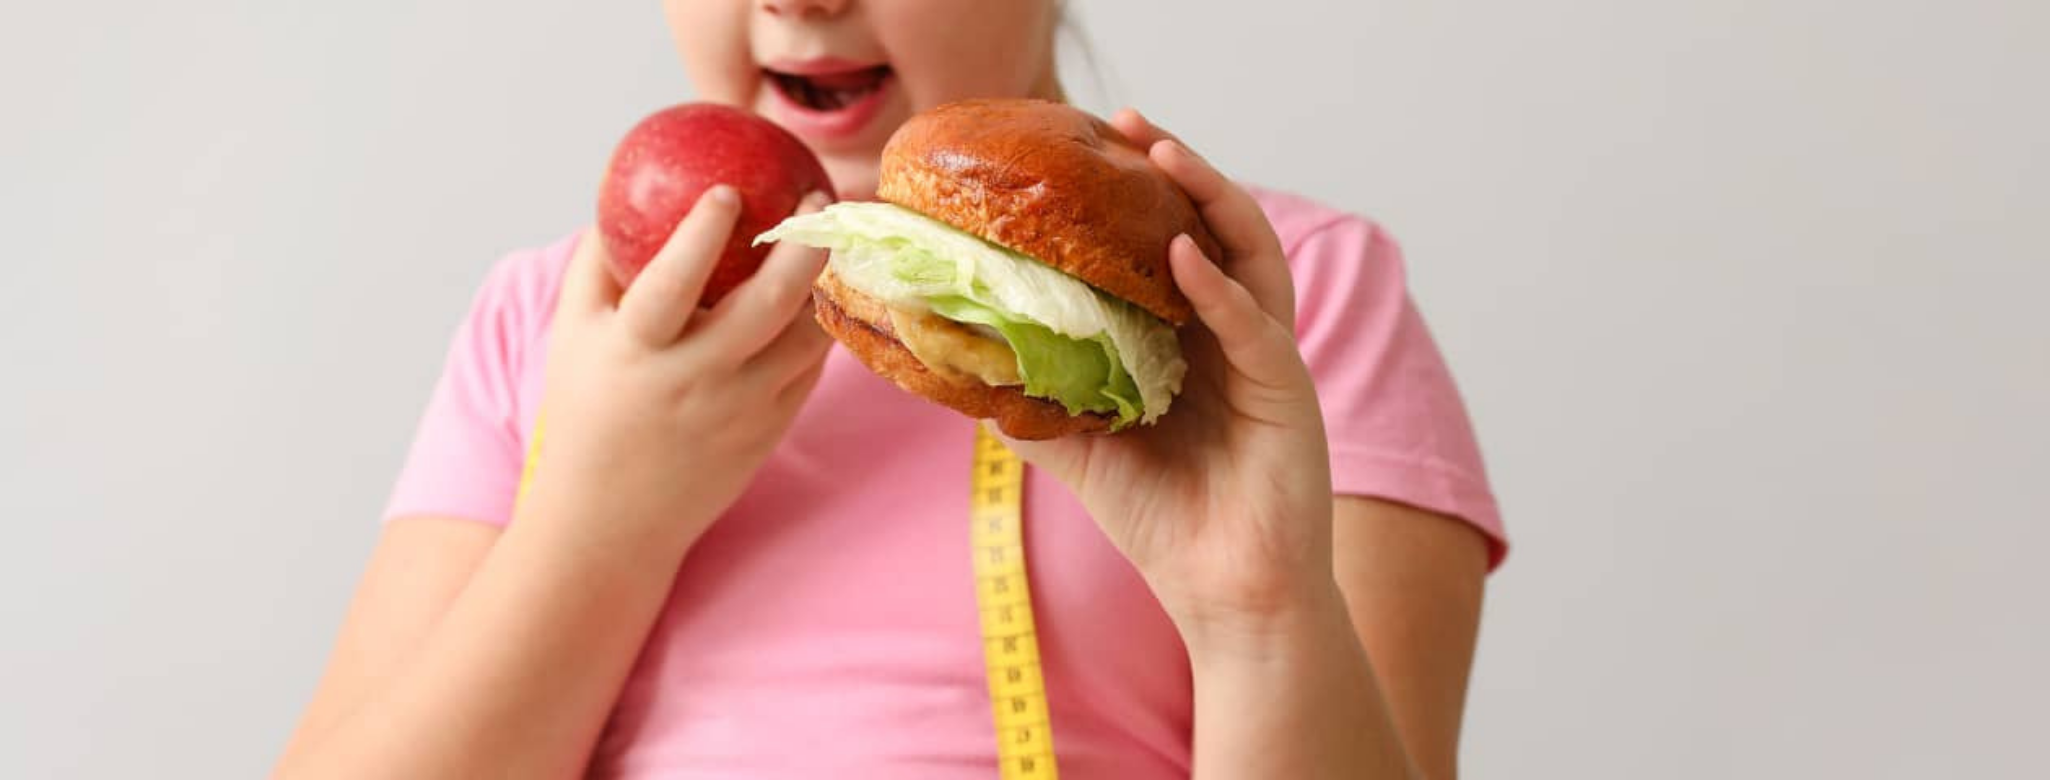 Novo Nordisk y UNICEF anuncian nueva alianza para prevenir el sobrepeso y la obesidad infantil 